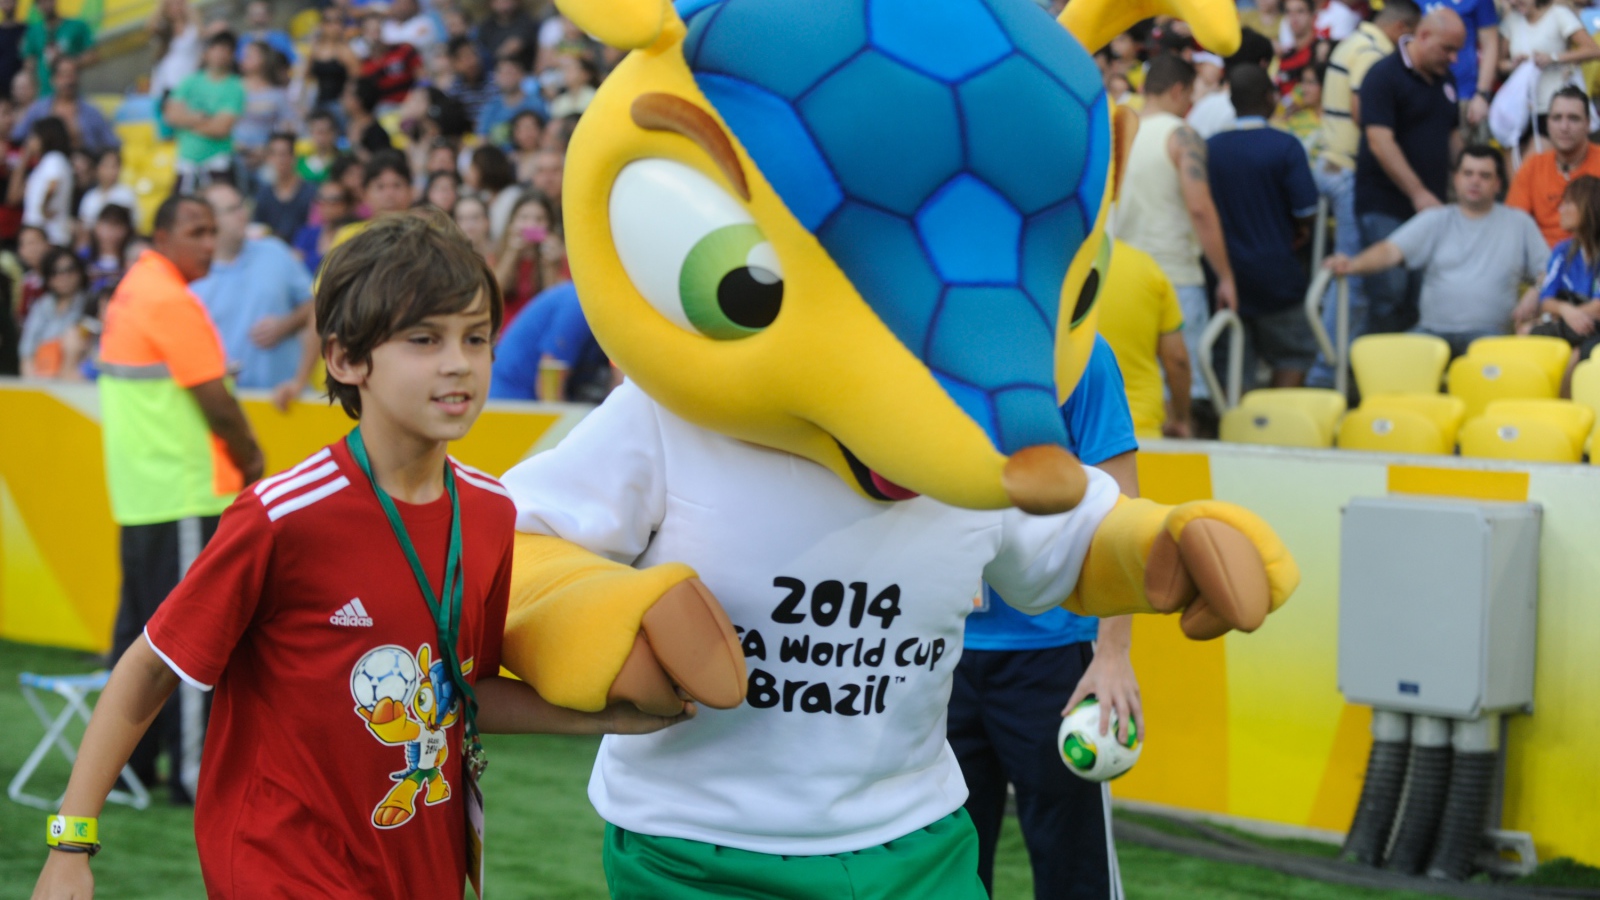 Талисман Чемпионата Мира по футболу в Бразилии 2014 приветствует я юным футболистом